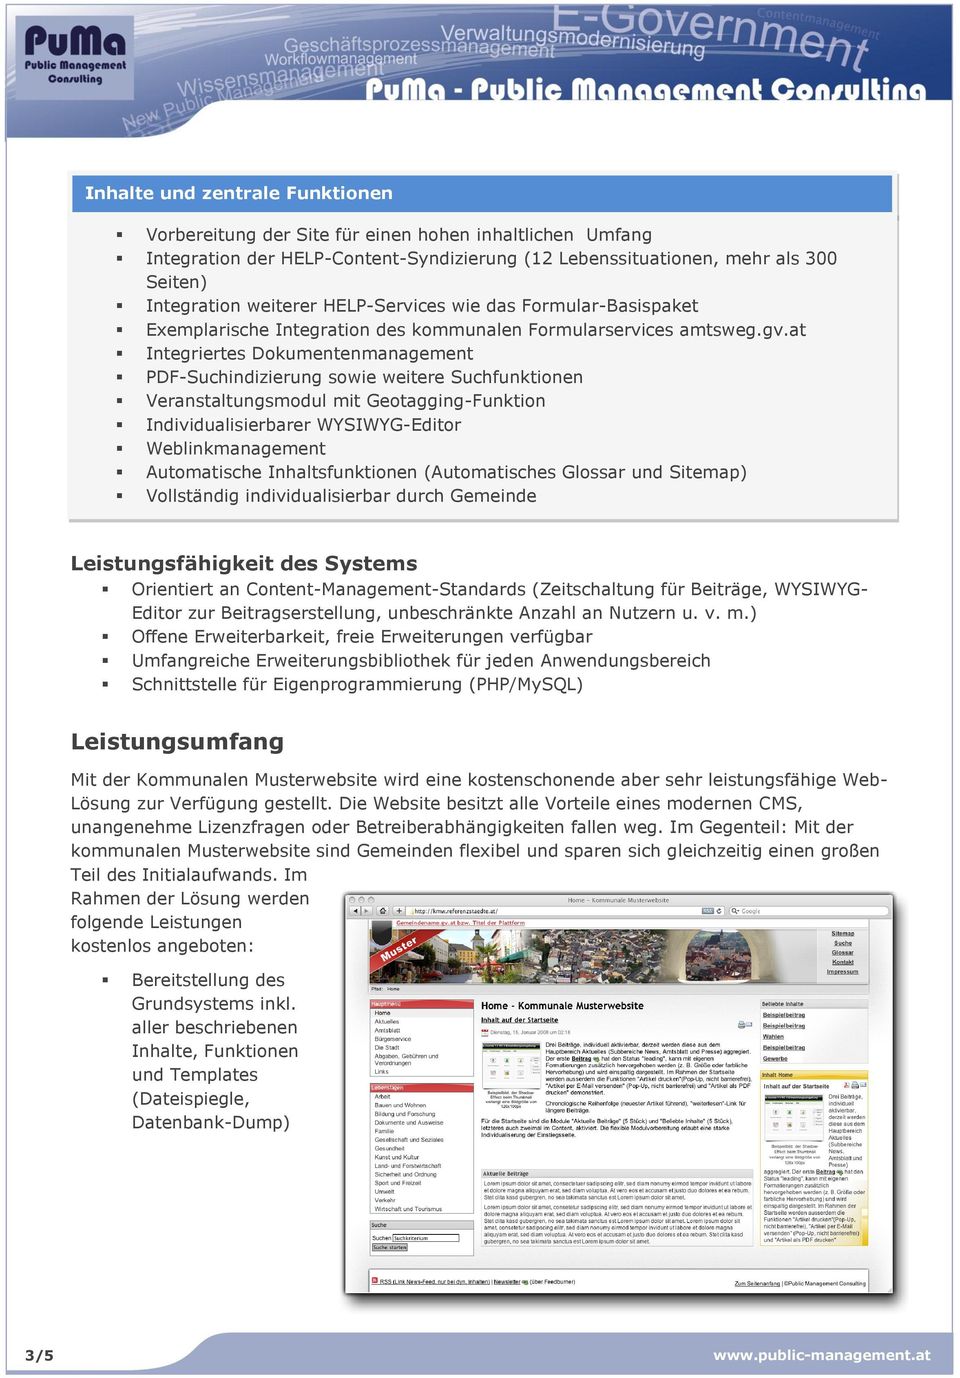 at Integriertes Dokumentenmanagement PDF-Suchindizierung sowie weitere Suchfunktionen Veranstaltungsmodul mit Geotagging-Funktion Individualisierbarer WYSIWYG-Editor Weblinkmanagement Automatische